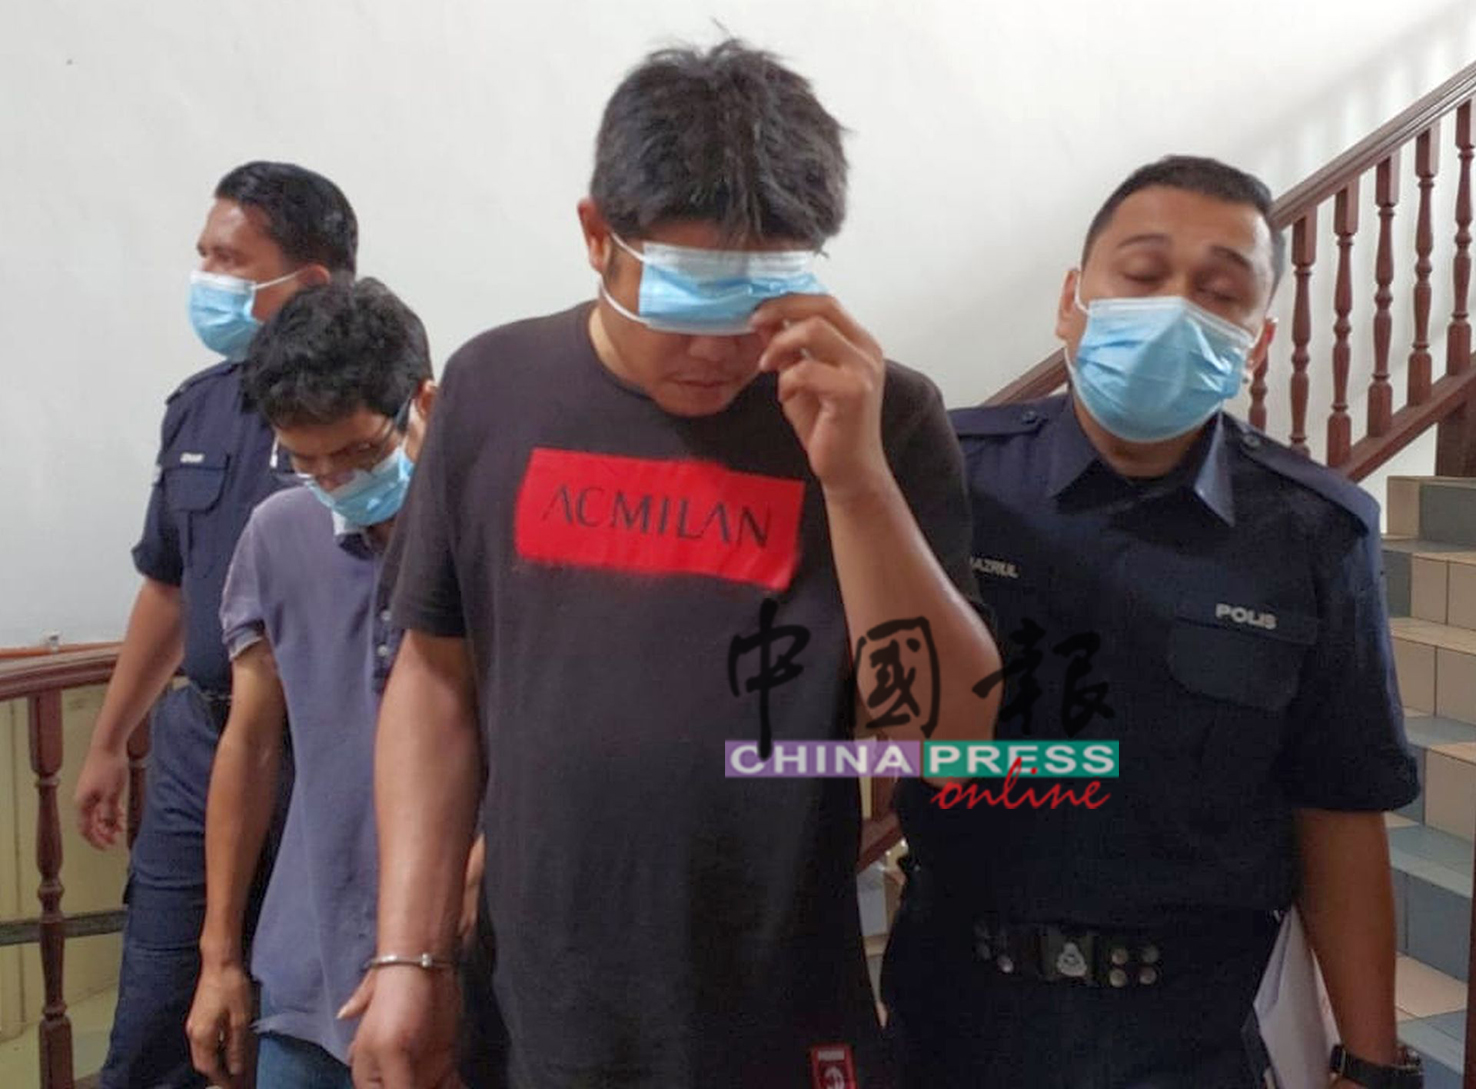 杨春仁（左2起）与邱威罗，由警员带离法庭。（人名译音）